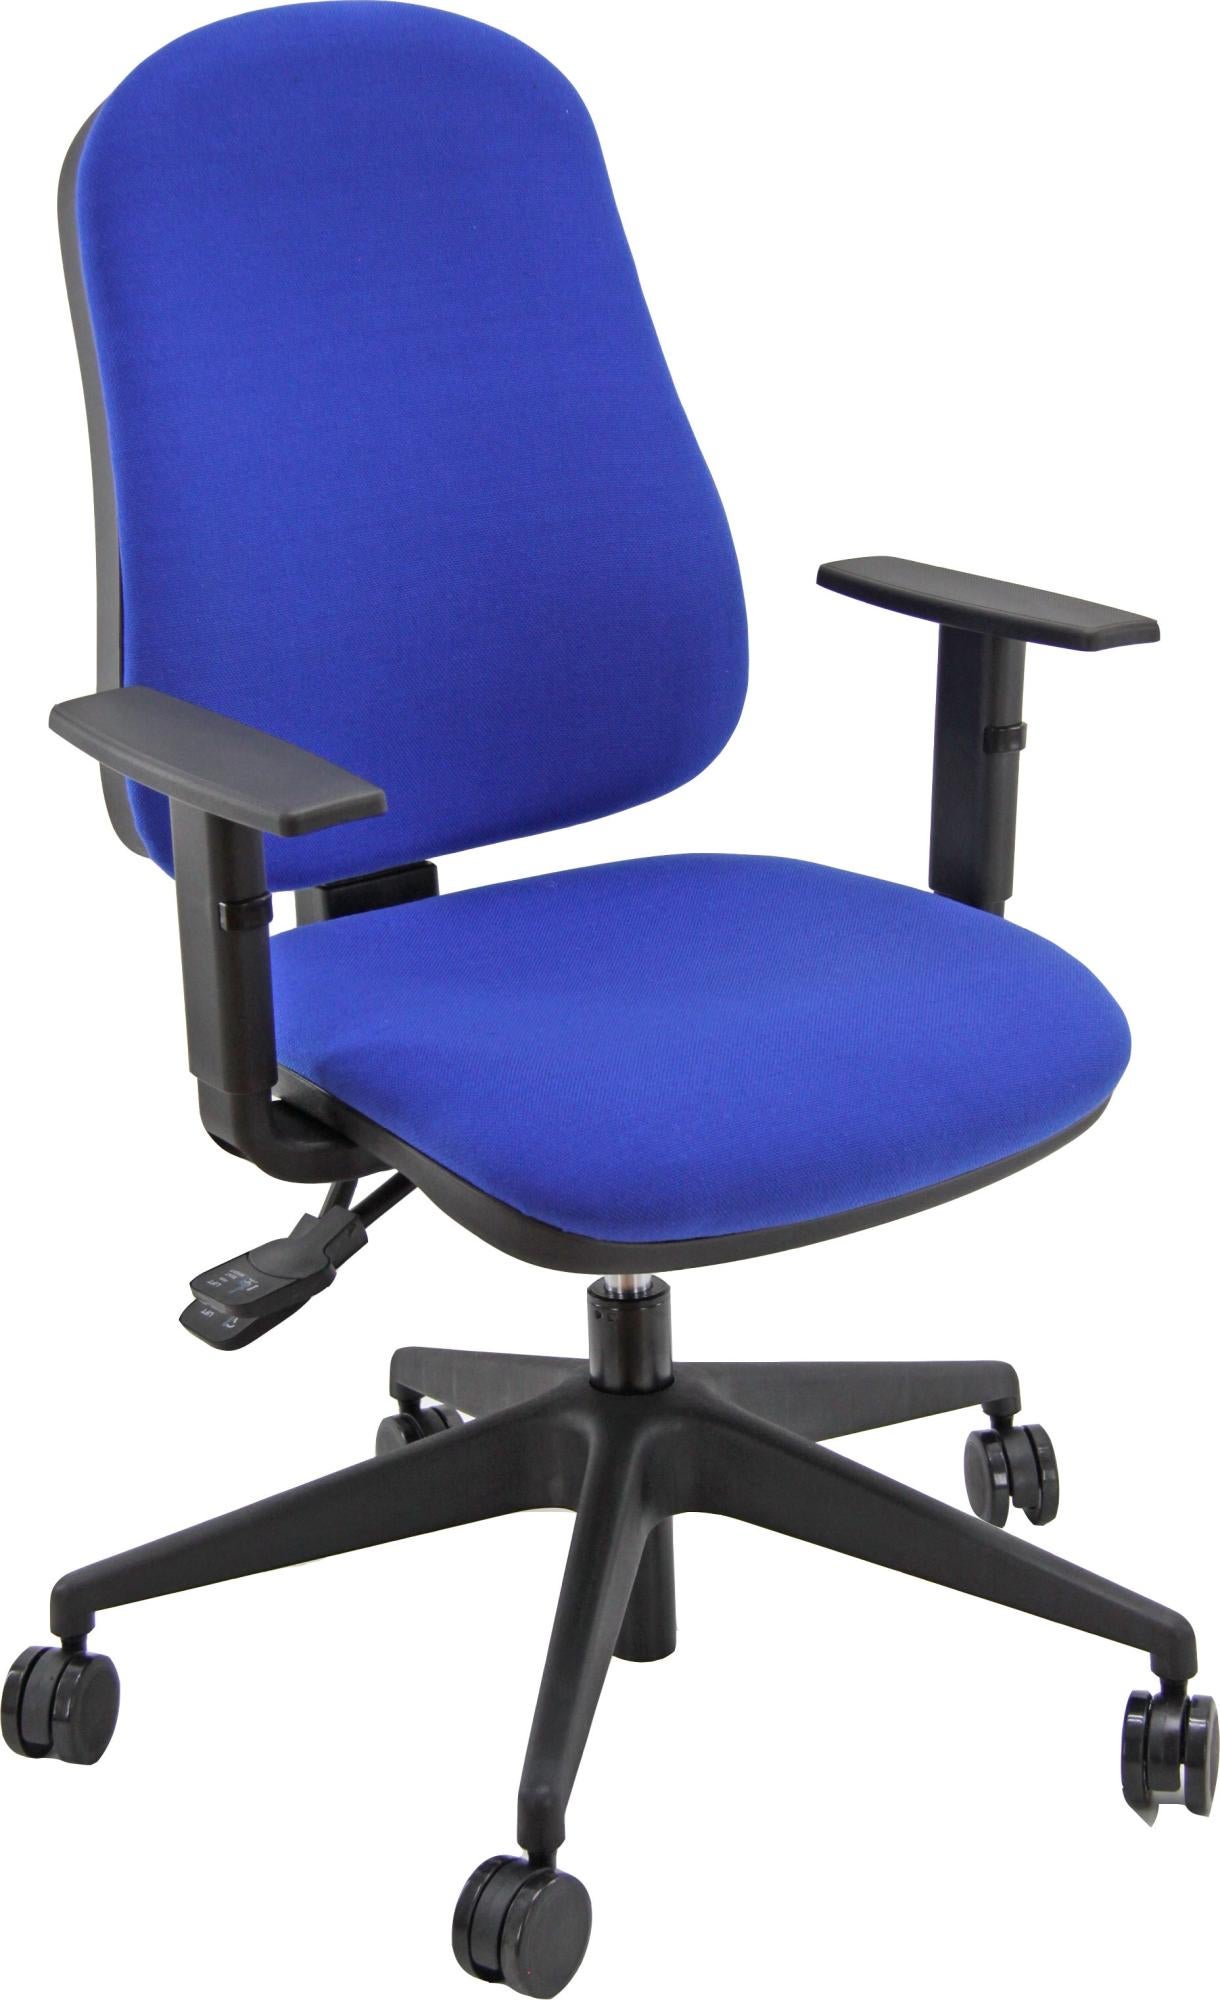 Silla de escritorio sincro simpel color azul con reposabrazos ajustables